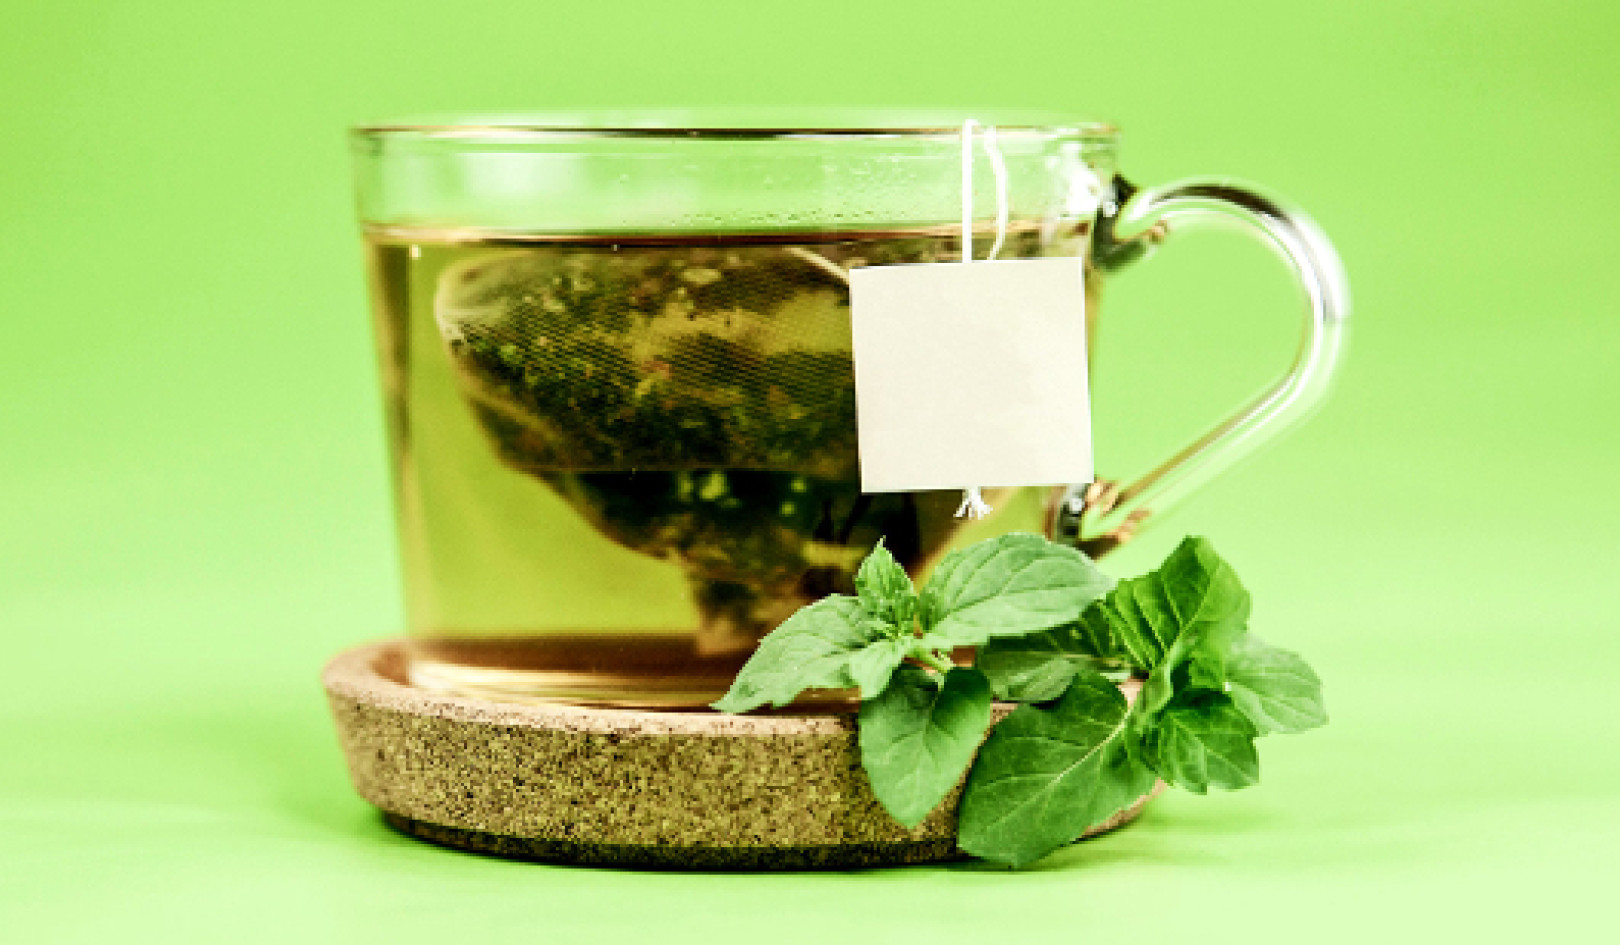 ترکیبات موجود در شراب و چای سبز می توانند آلزایمر را کاهش دهند؟